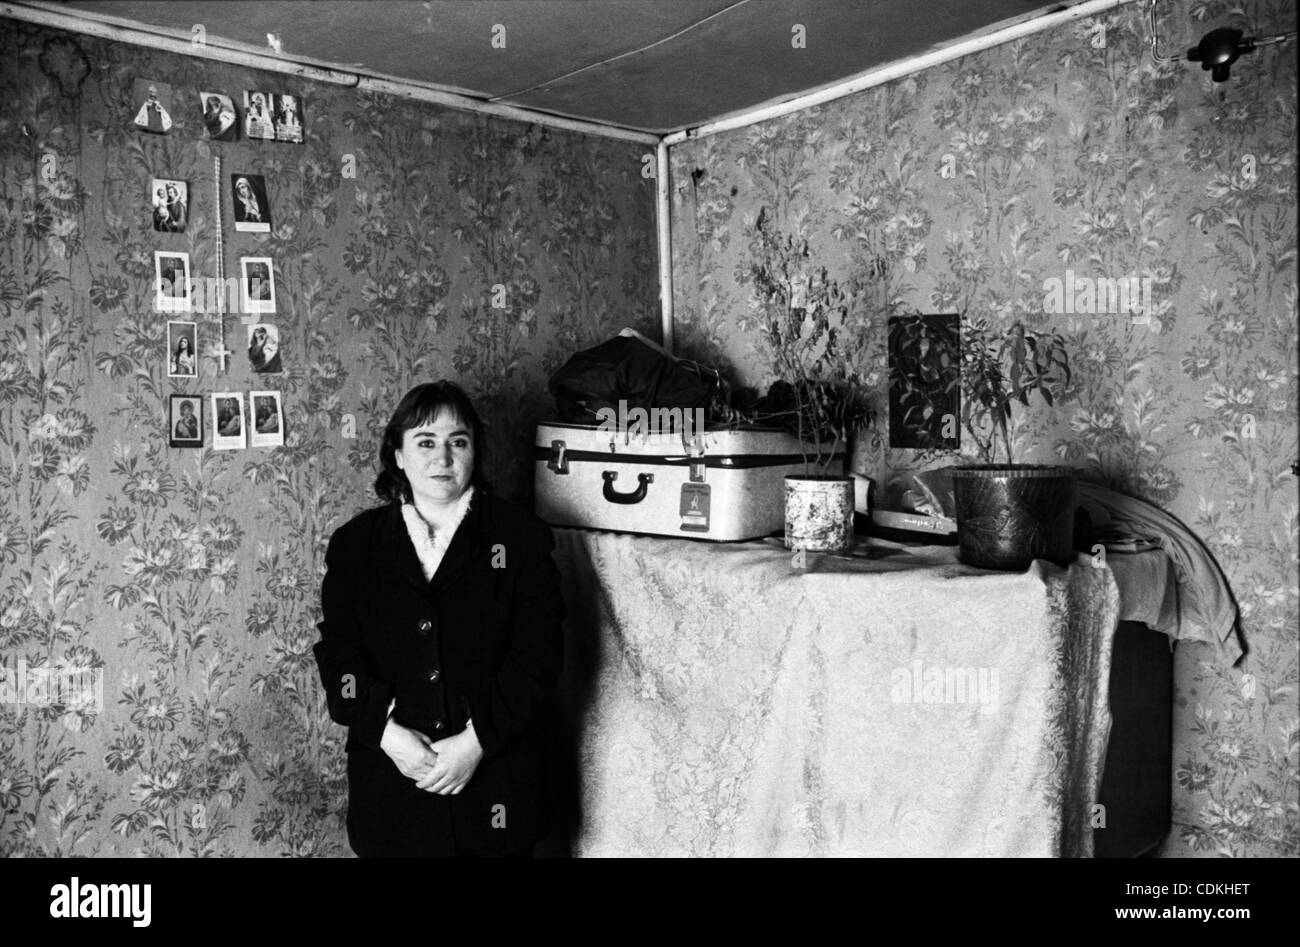 La gente vive en los contenedores, después de 23 años. Asia, Armenia, Gyumri, 06.03.2011: de Gyumri (ex Leninakan) sufridos por el terremoto de diciembre 7, 1988. El epicentro del terremoto fue en la ciudad de Spitak, matando a 25.000 personas. En Gyumri más de 20.000 apartamentos y casas privadas fueron arruinadas y Foto de stock